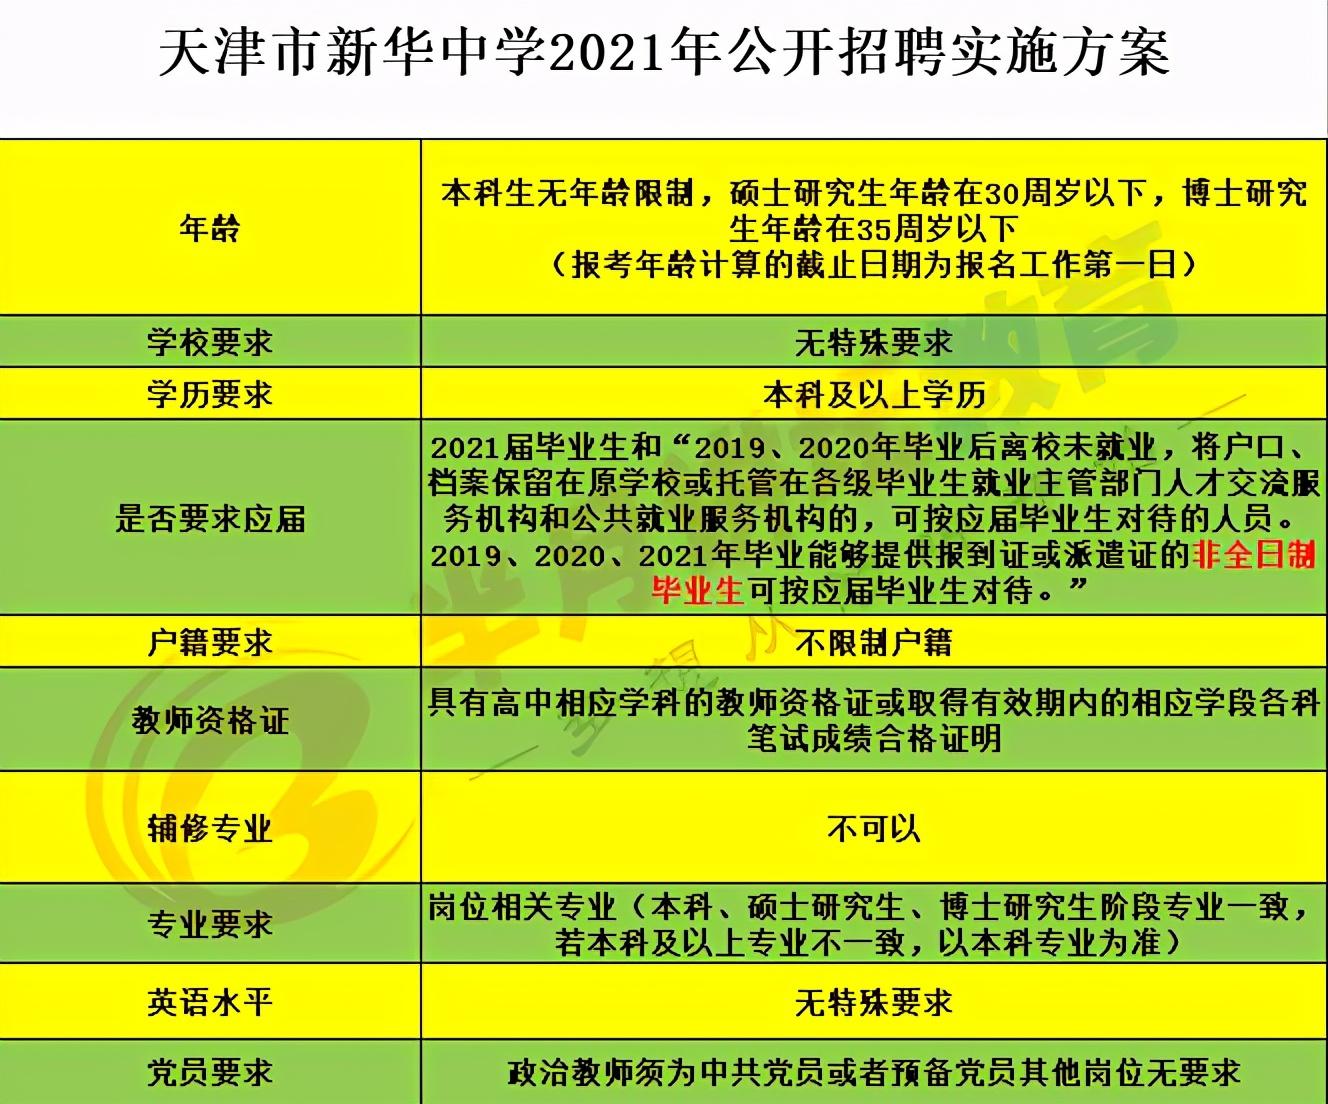 蒙城县人力资源和社会保障局政务公开网公布公告